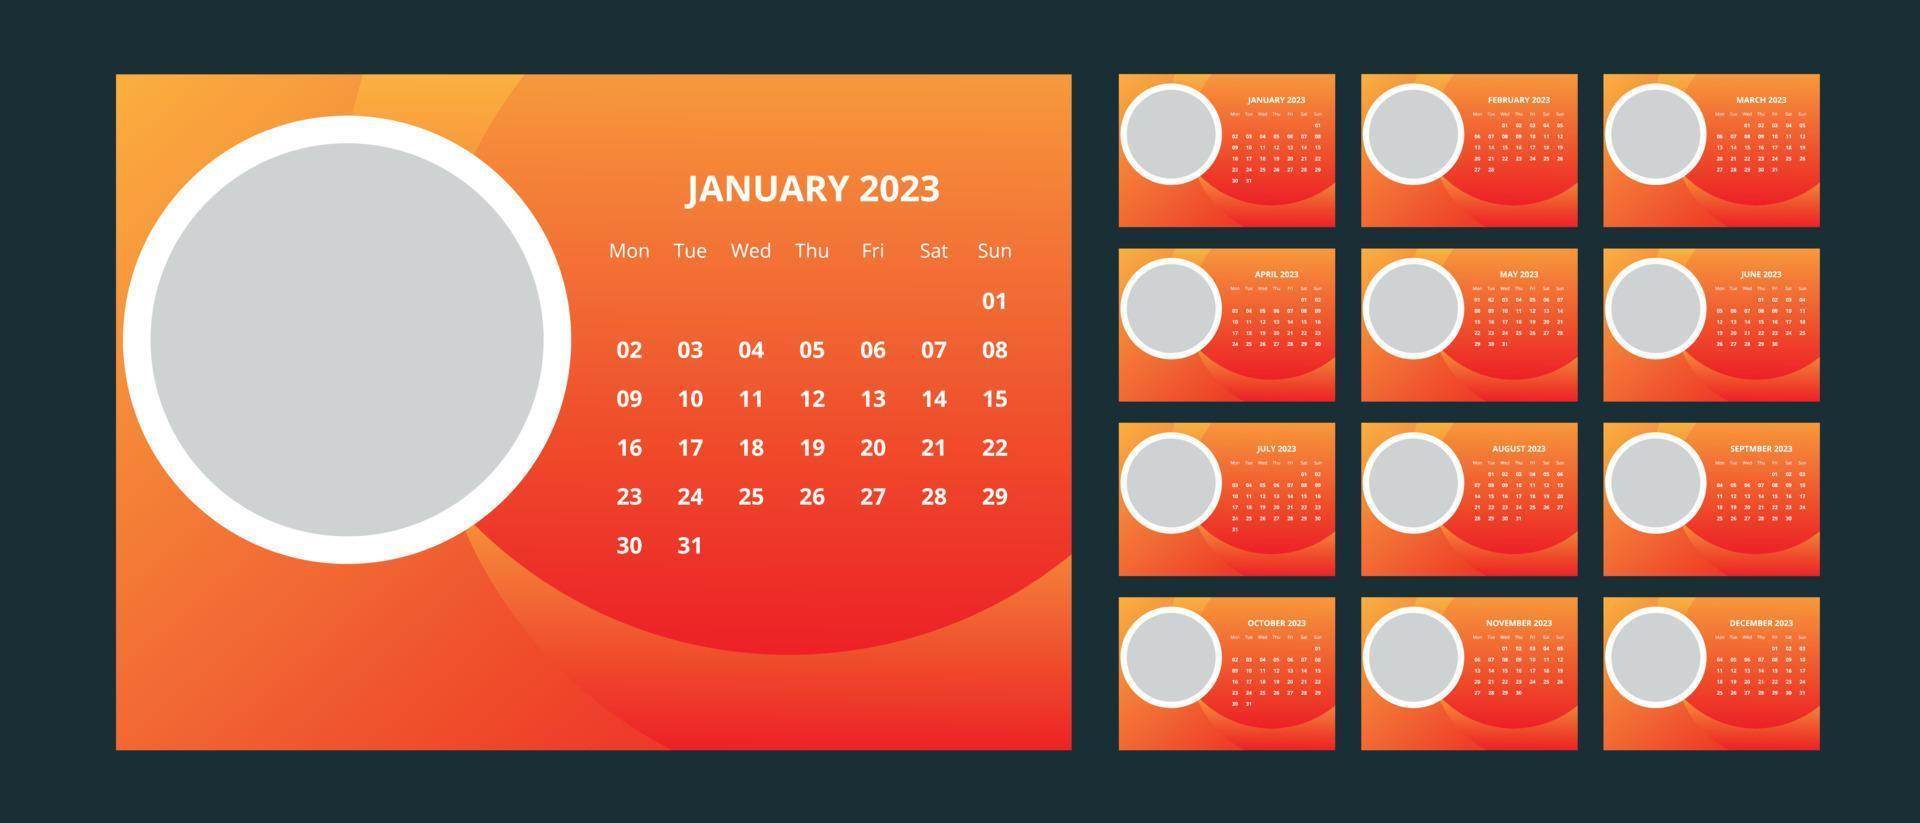 Desk Calendar 2023 vector